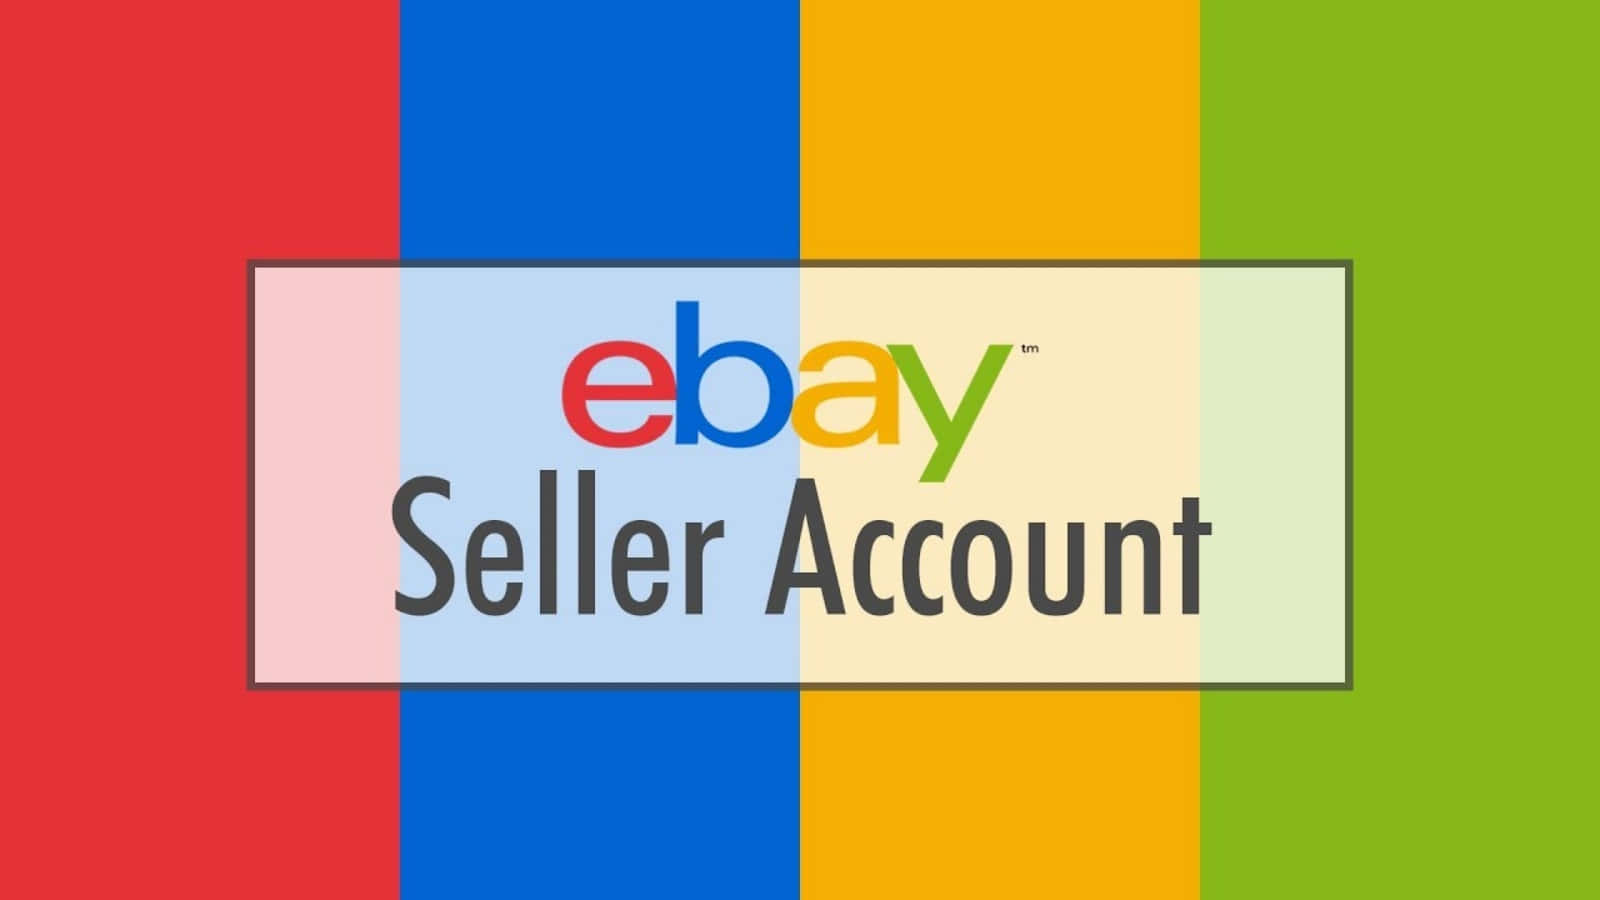 Handlaalternativa Och Ovanliga Produkter På Ebay